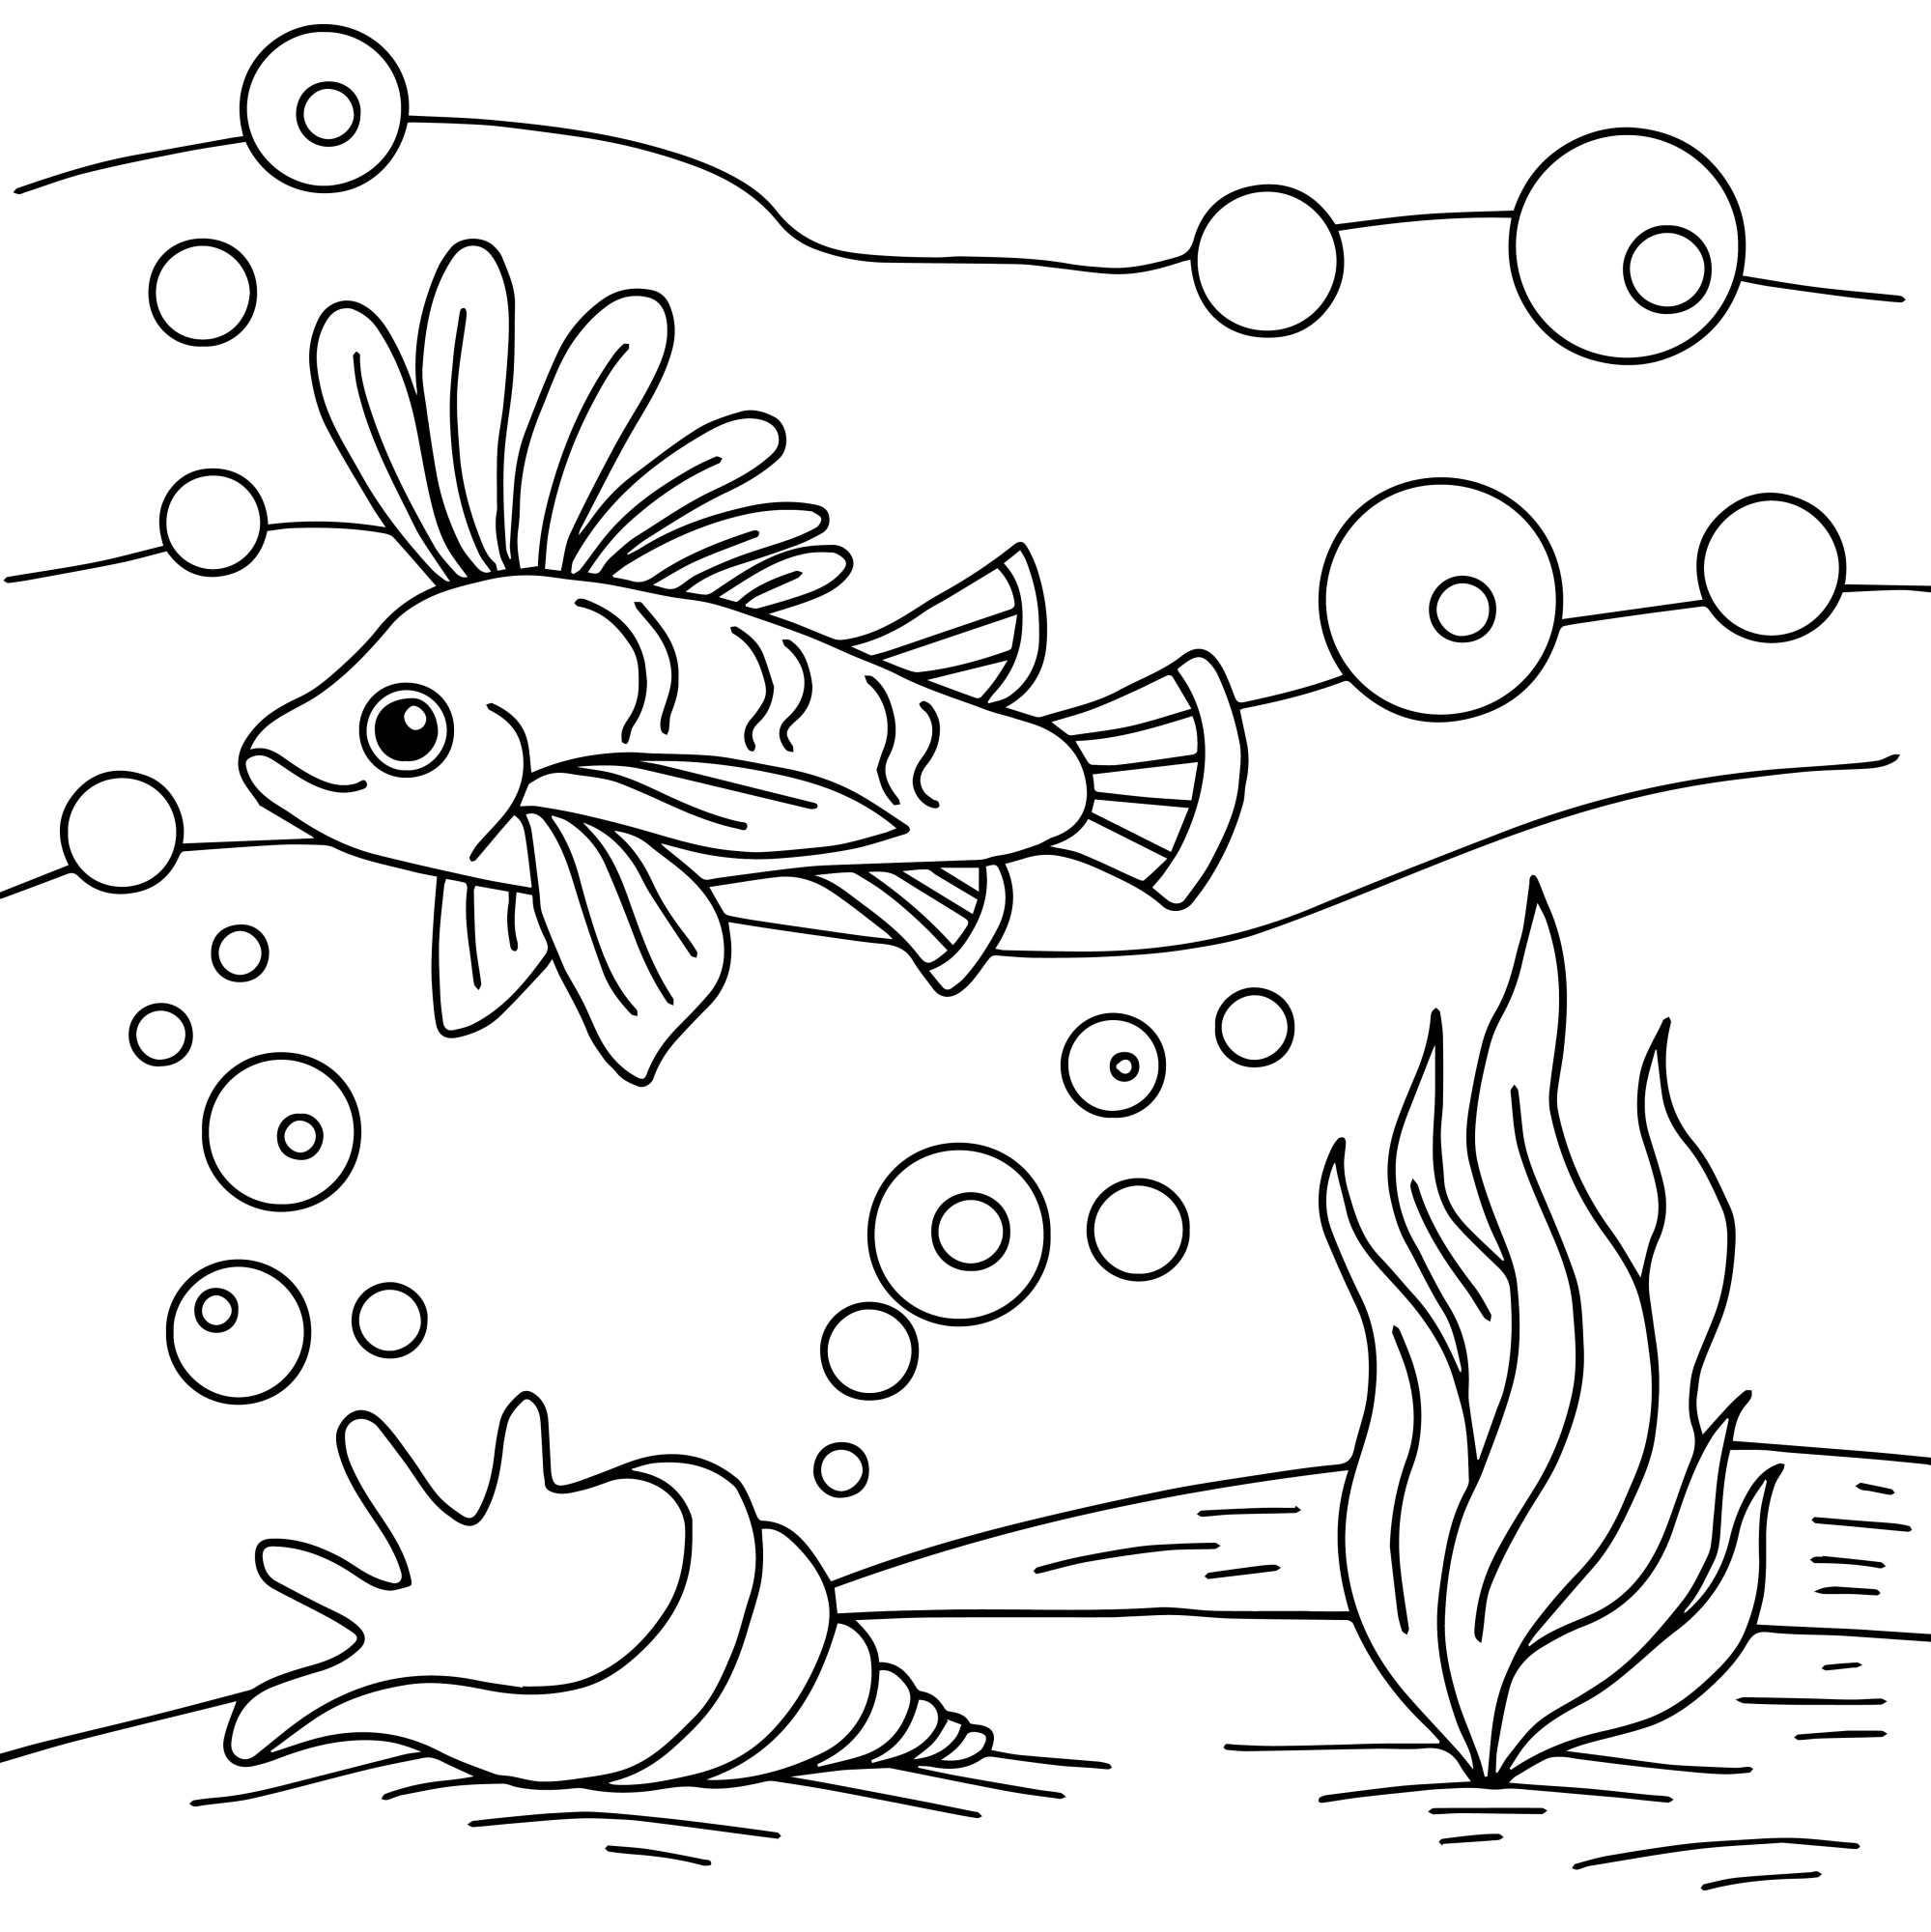 Раскраска для детей: рыба с большим плавником